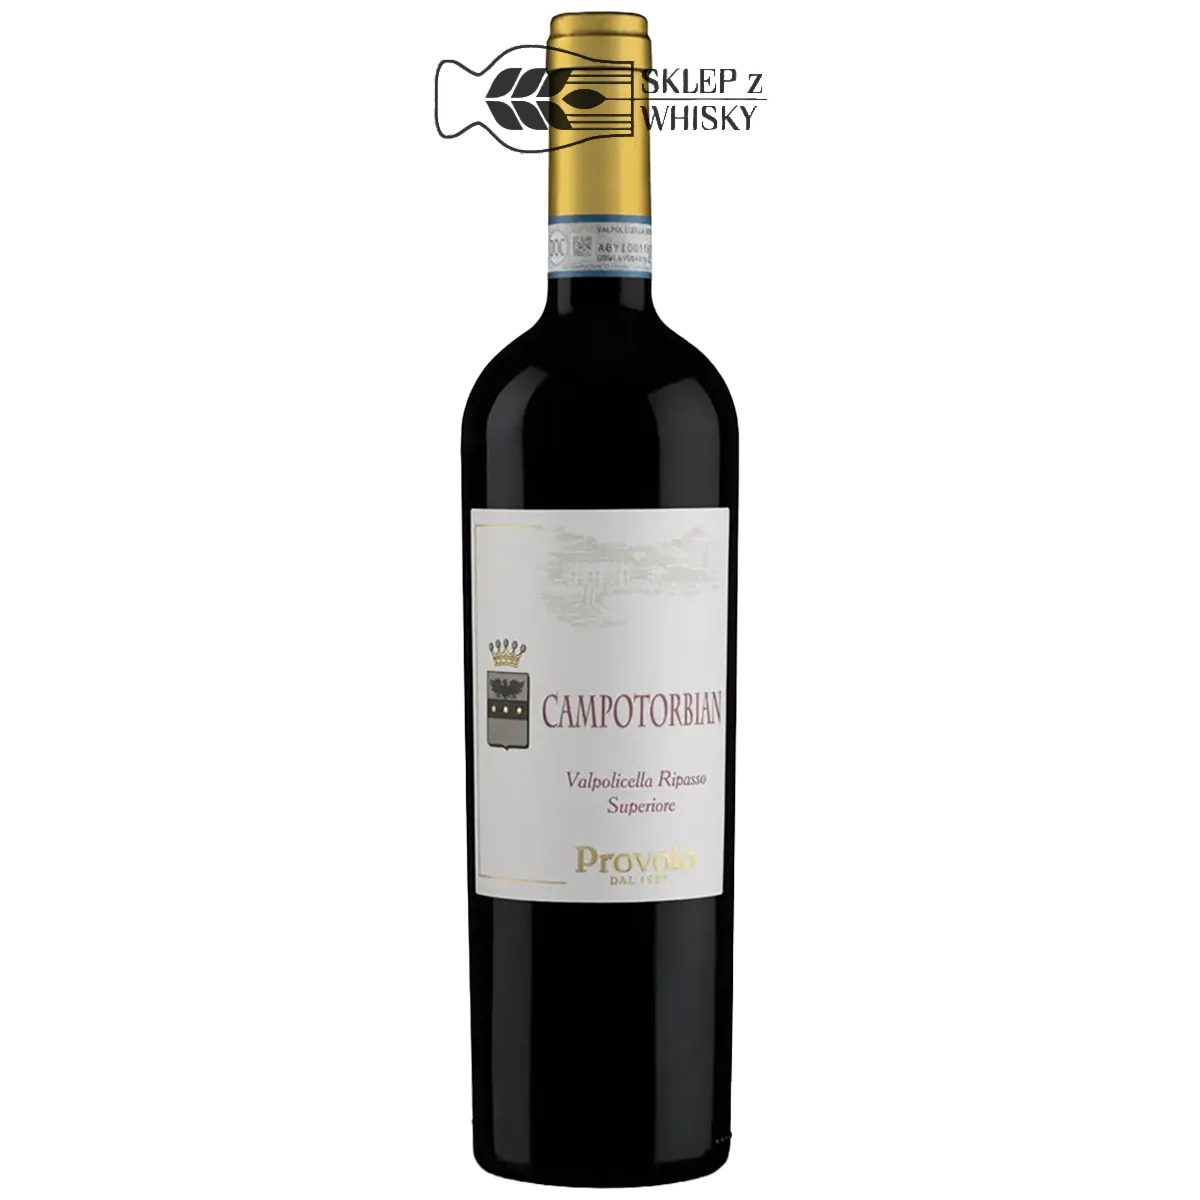 Provolo Campotorbian Valpolicella Ripasso Superiore - wino włoskie, czerwone, wytrawne, 750 ml